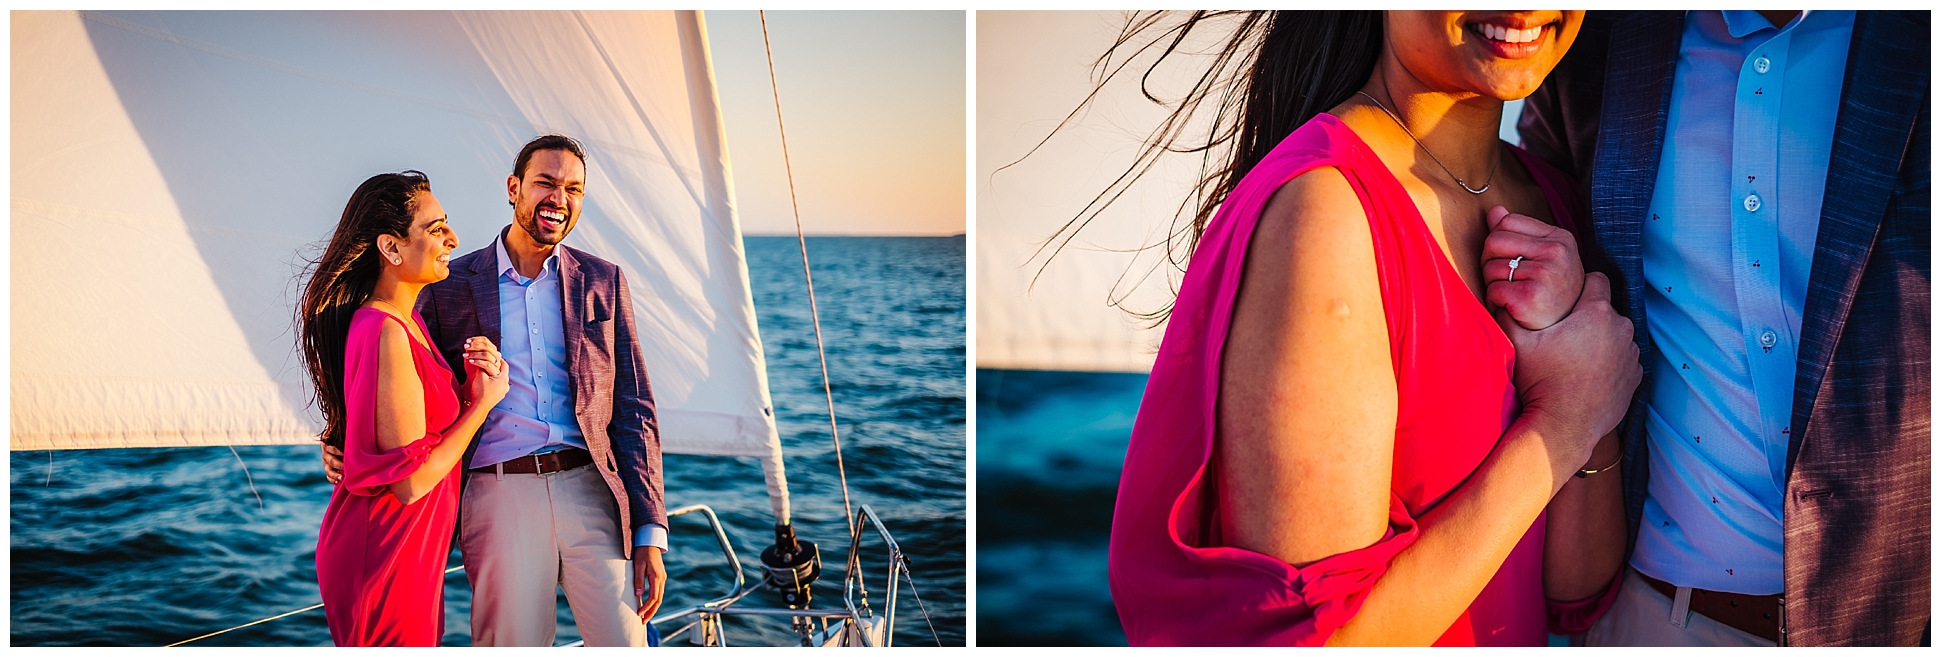 tampa bay-sailboat-sunset-proposal-engagememnt_0014.jpg